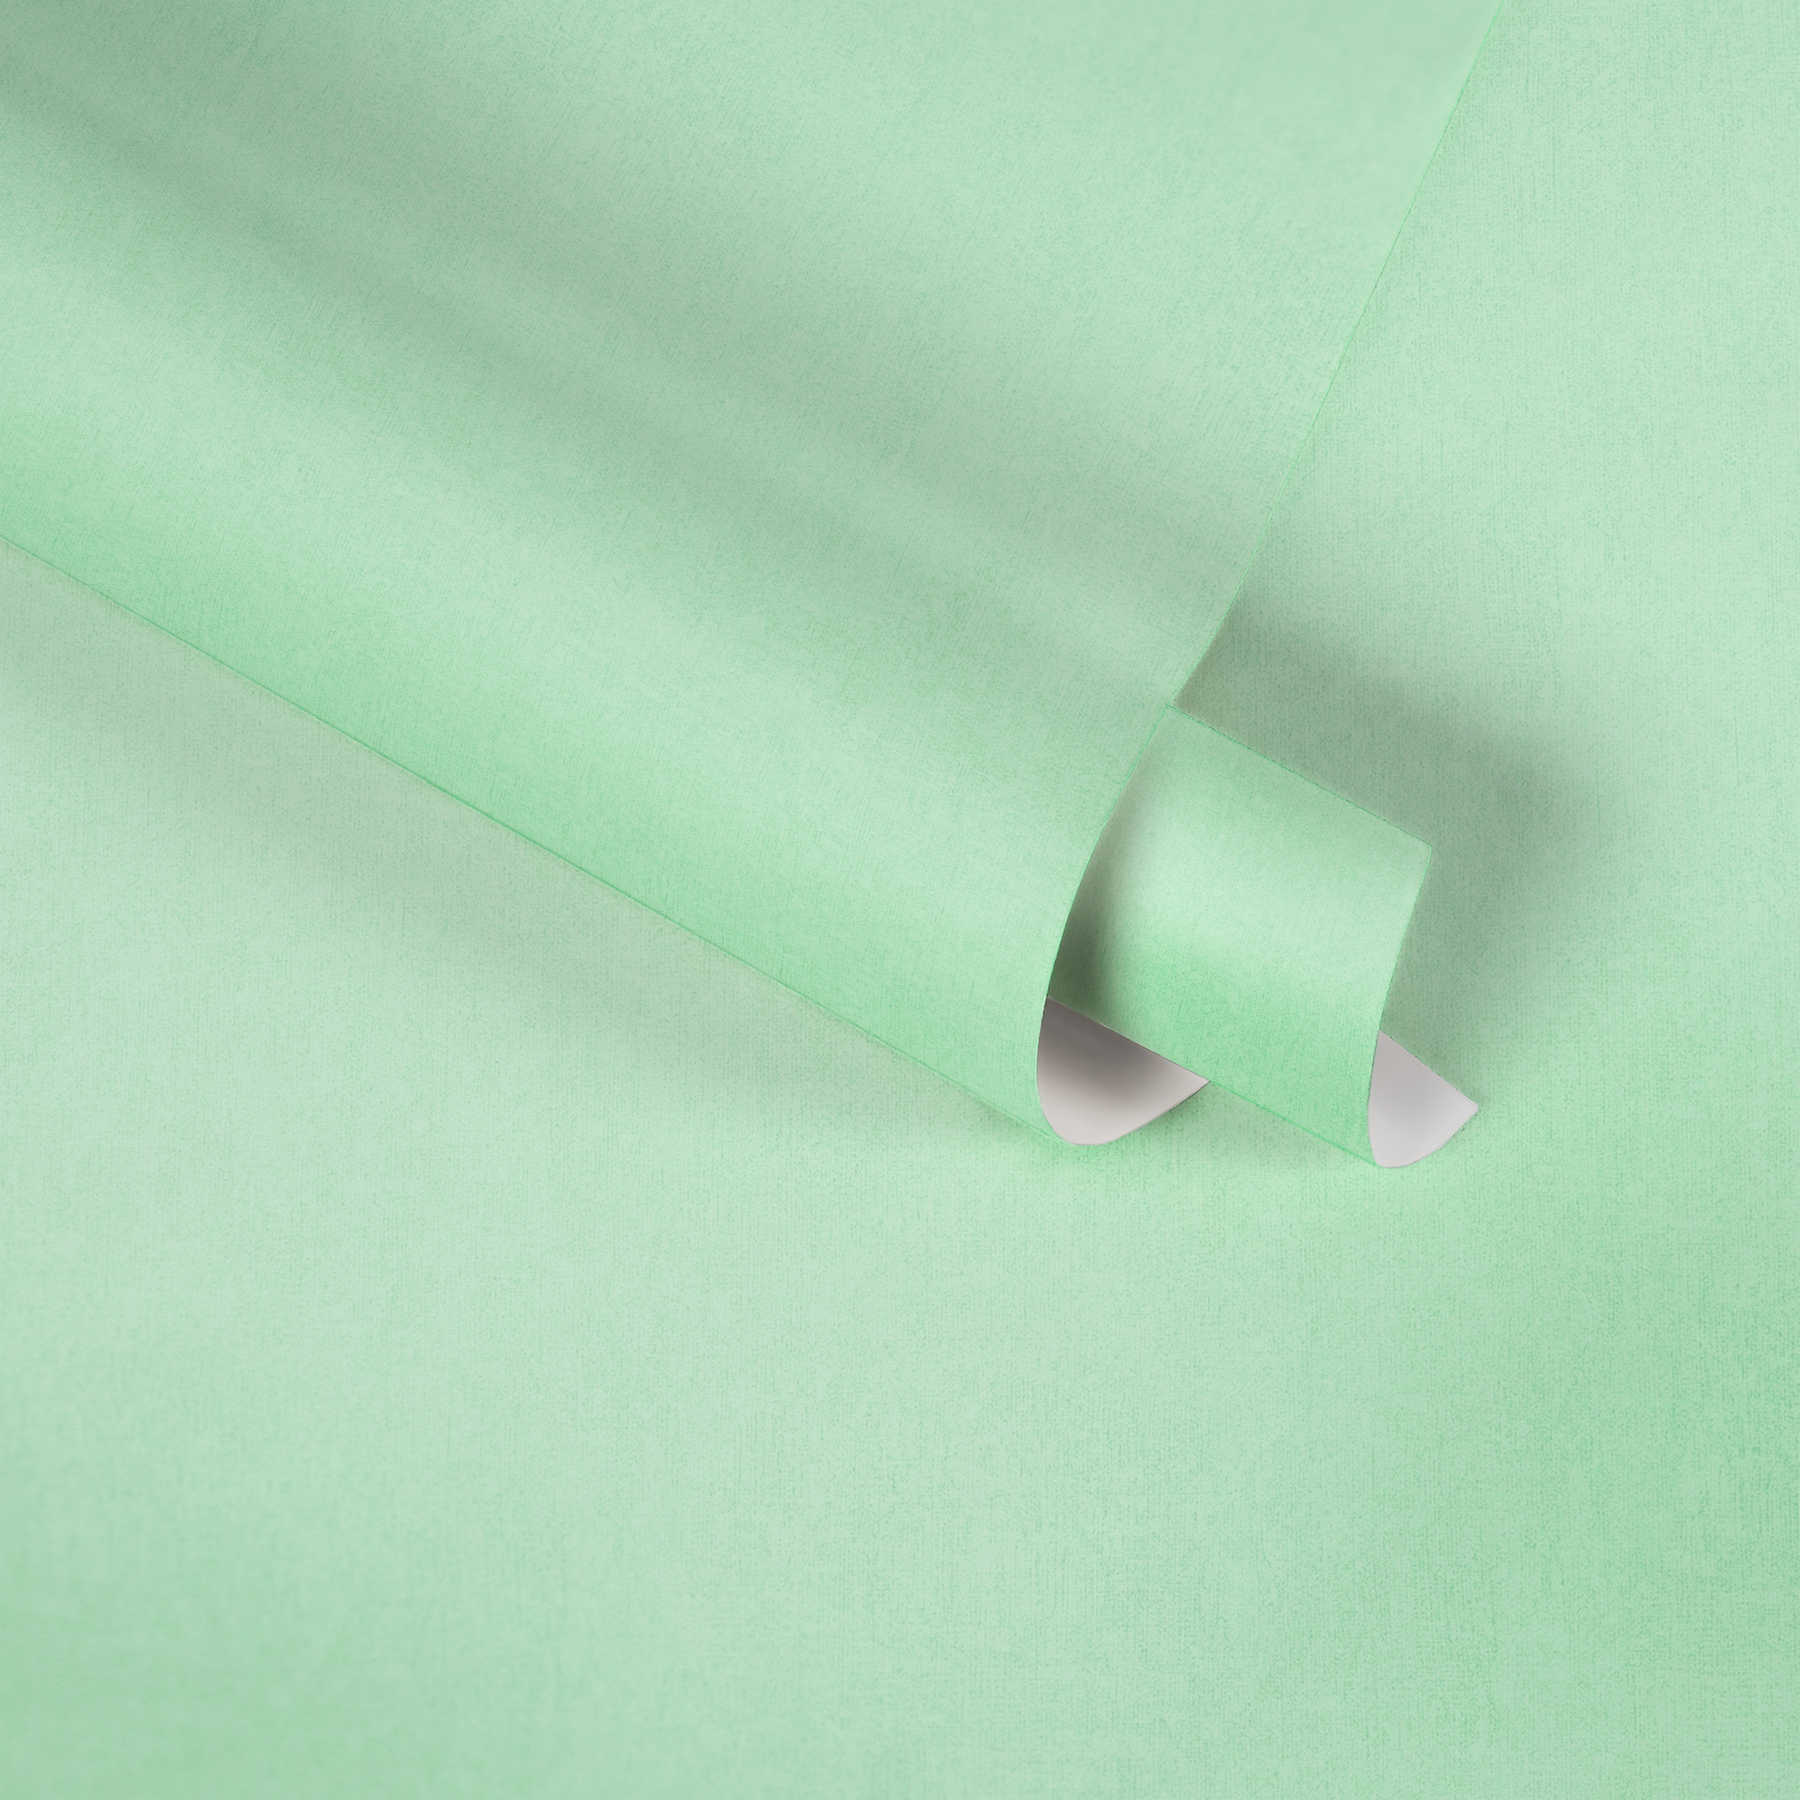             Pastelgroen vliesbehang effen voor kinderkamer - groen
        